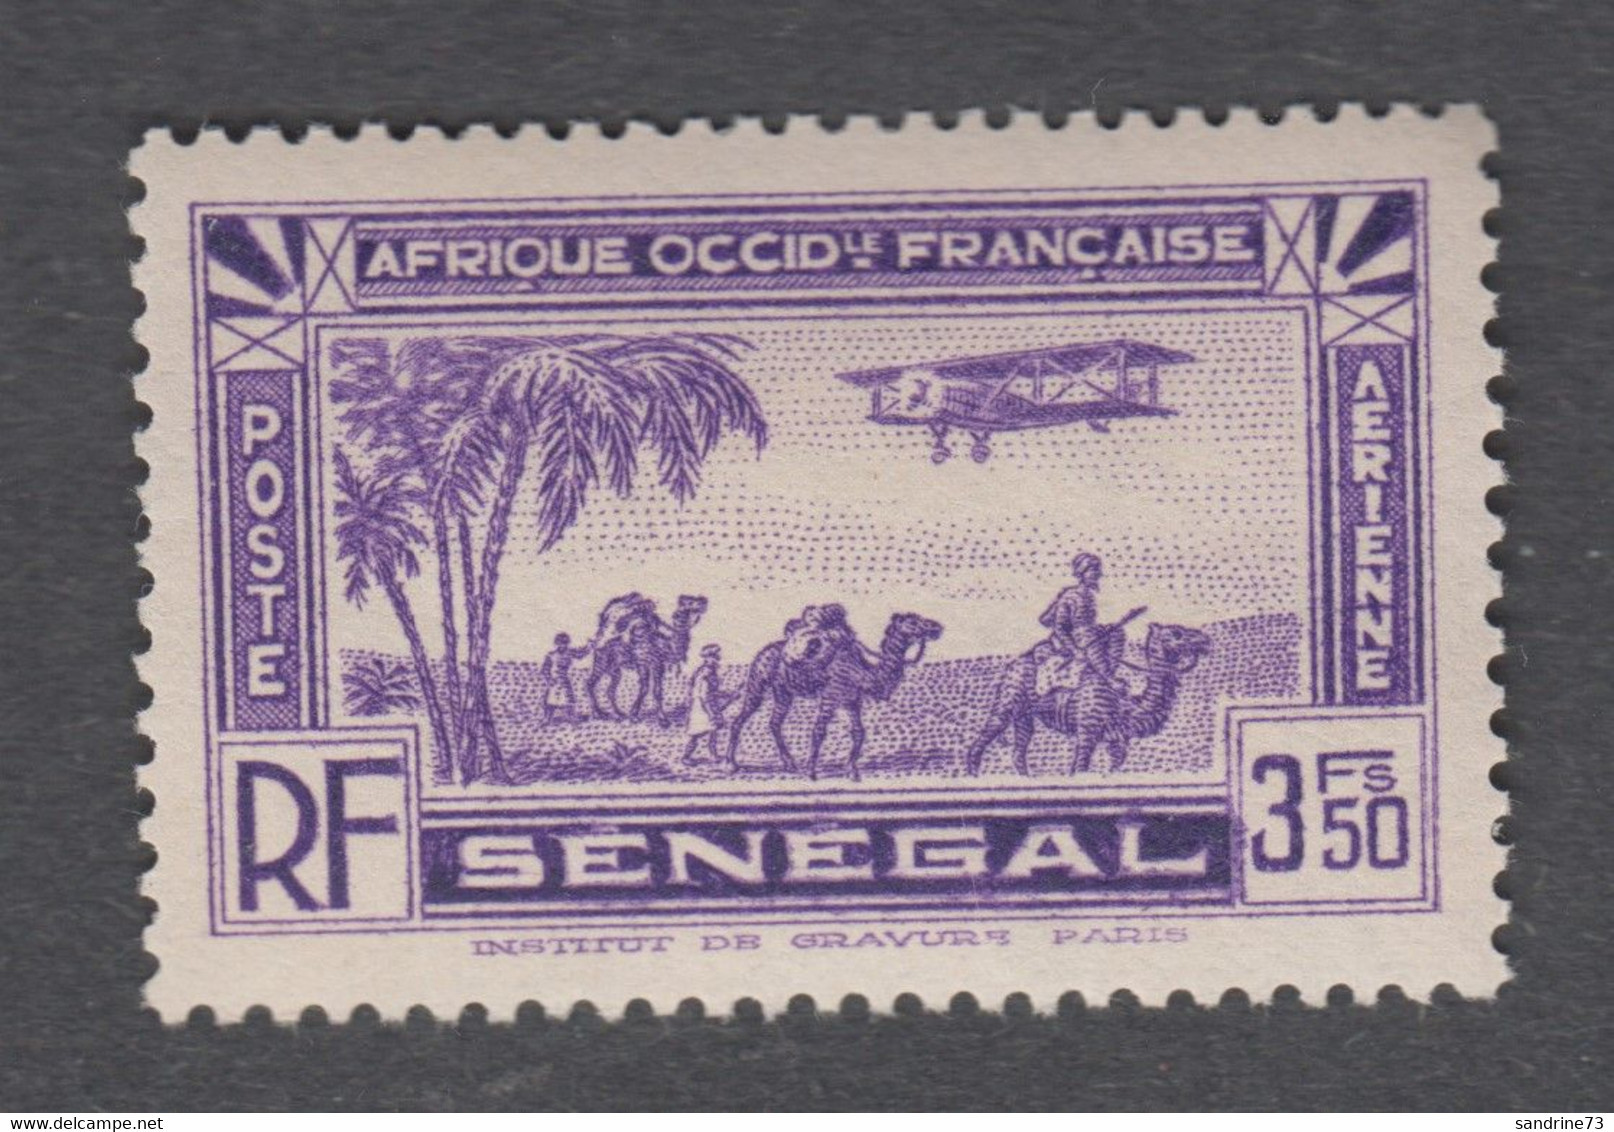 Colonies Françaises -Timbres Neufs** - Sénégal - PA N° 7 - Airmail